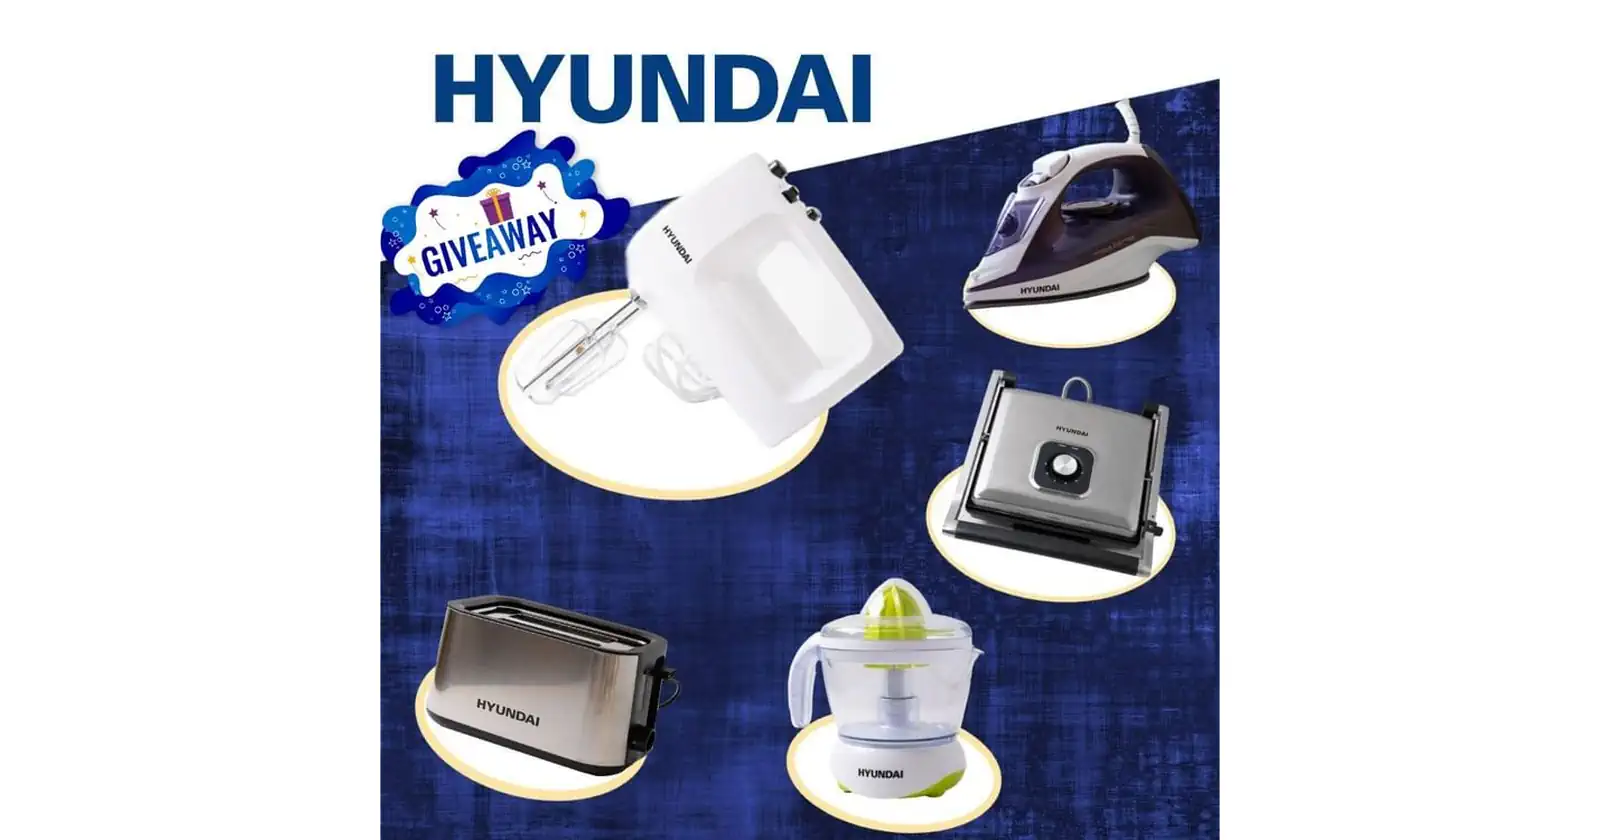 Roda nagradna igra: Hyundai Giveaway za kućne aparate